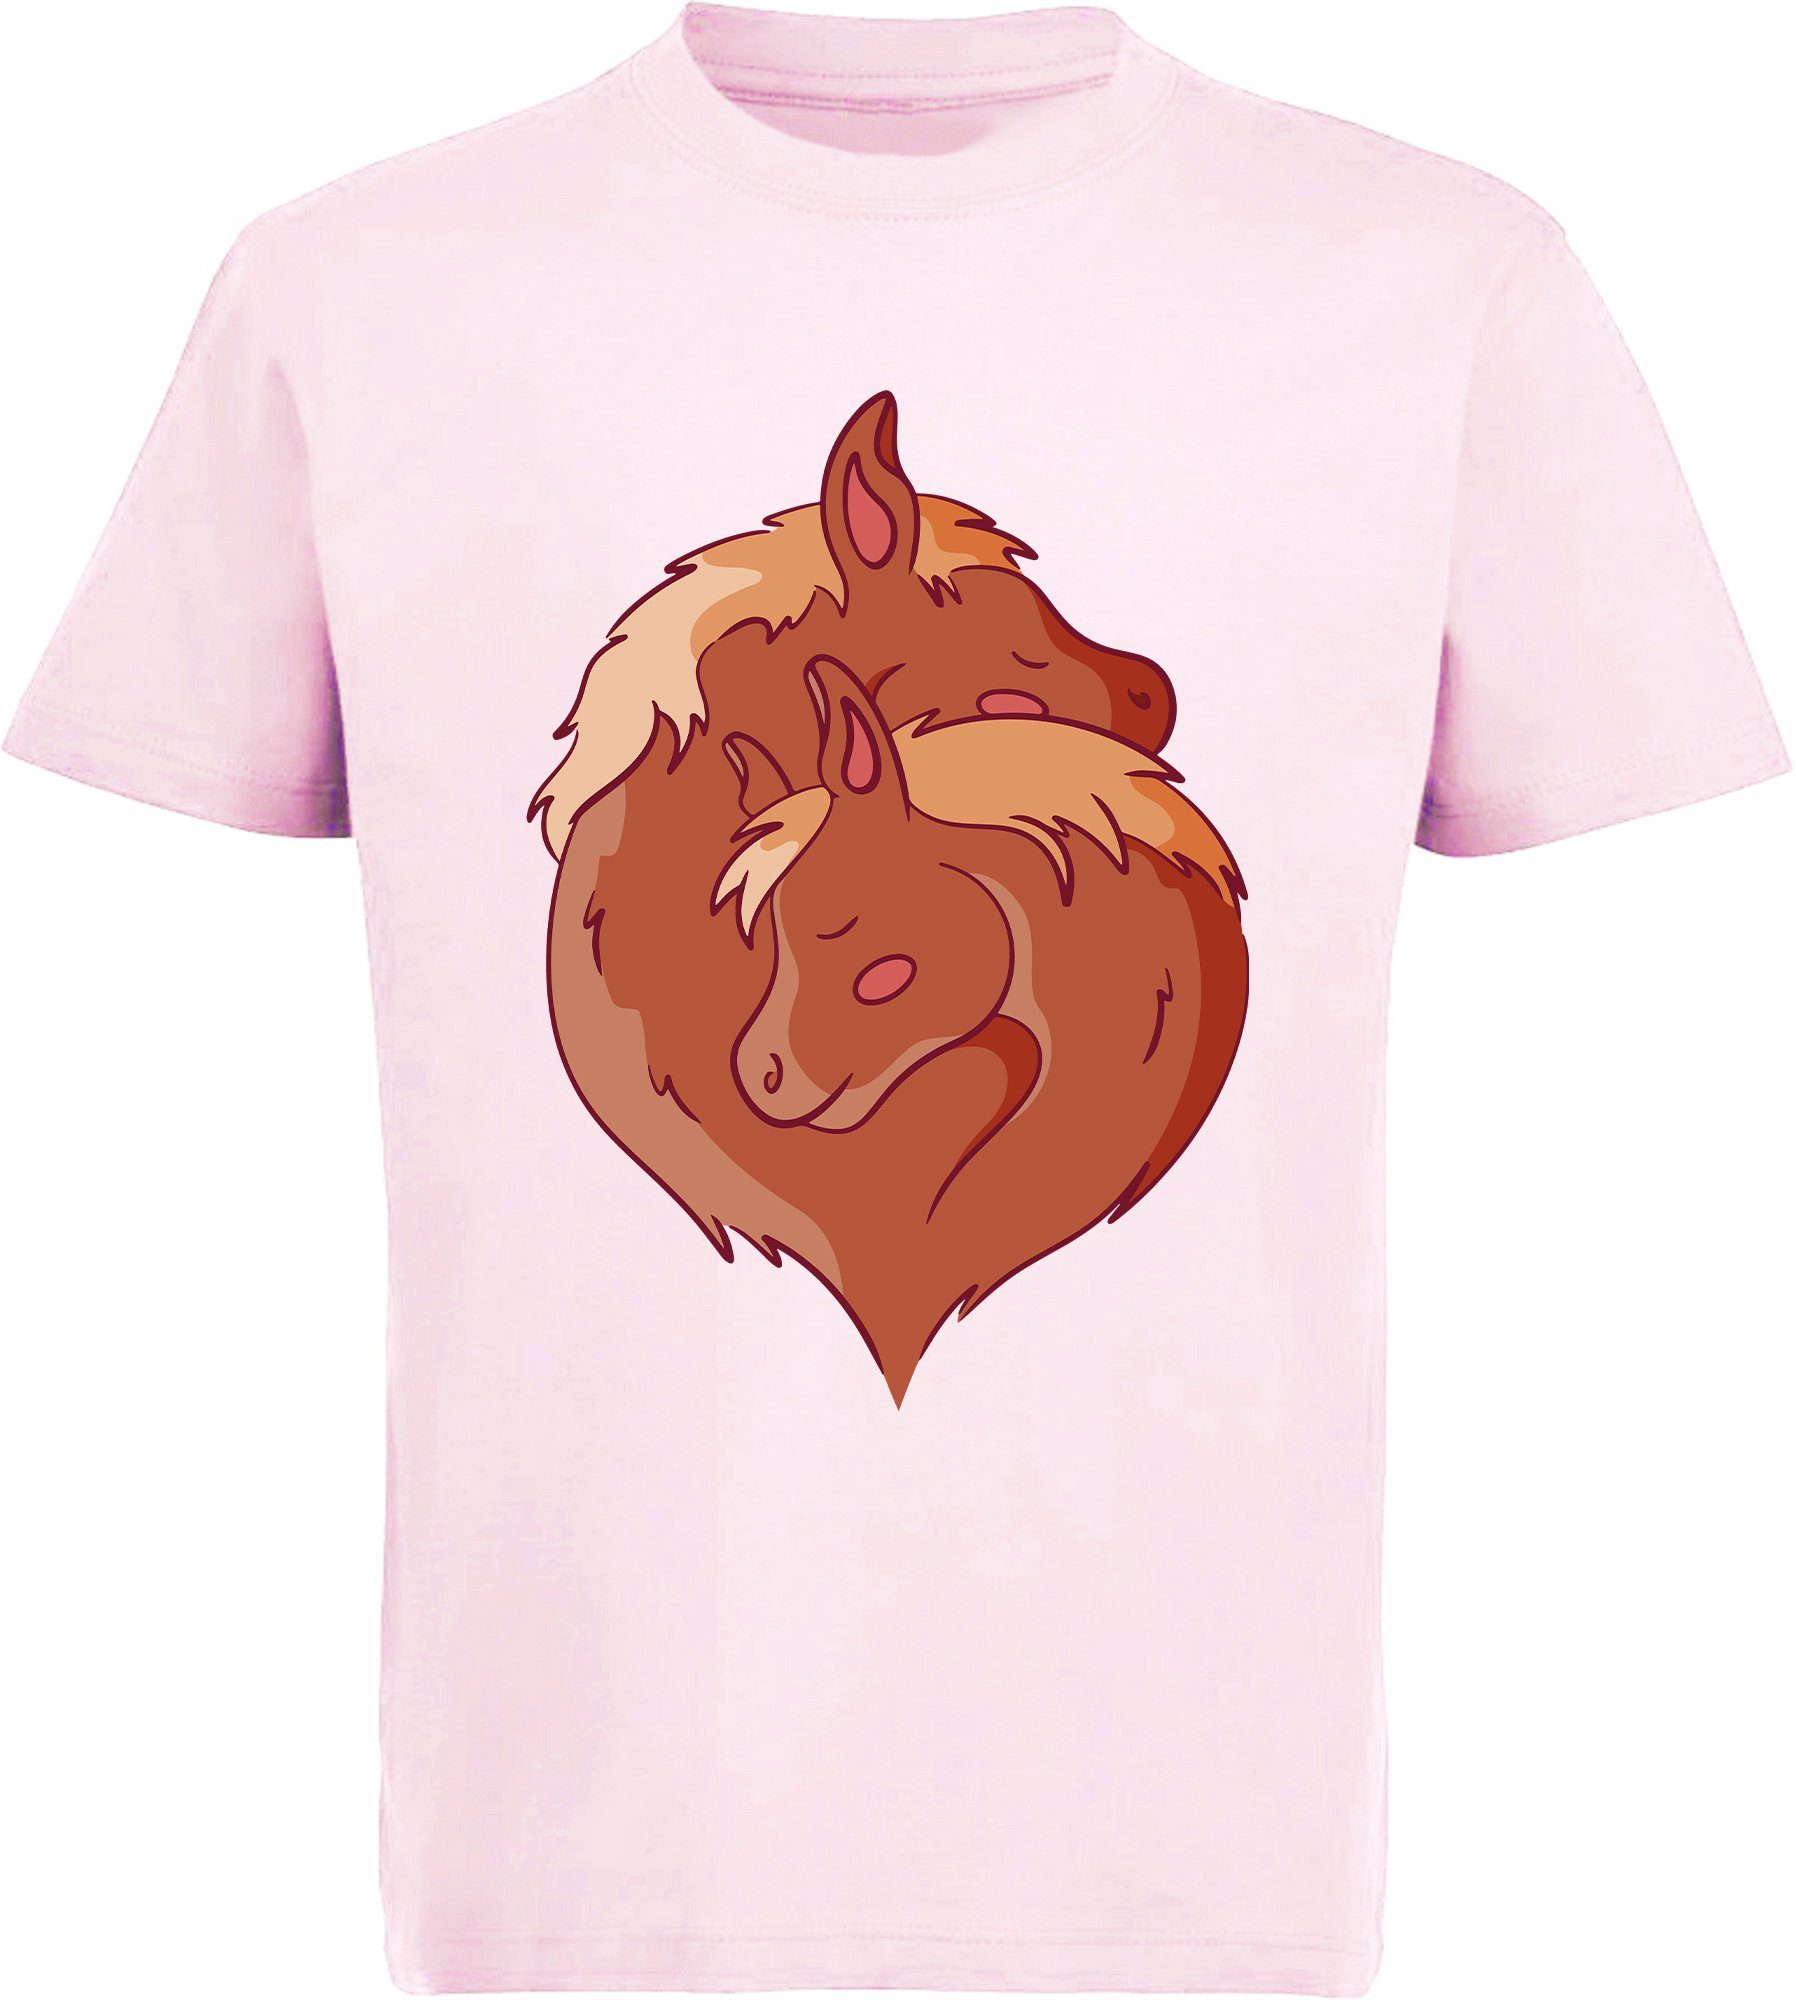 MyDesign24 Print-Shirt bedrucktes Mädchen T-Shirt zwei kuschelnde Pferde im Yin Yang Stil Baumwollshirt mit Aufdruck, i152 rosa